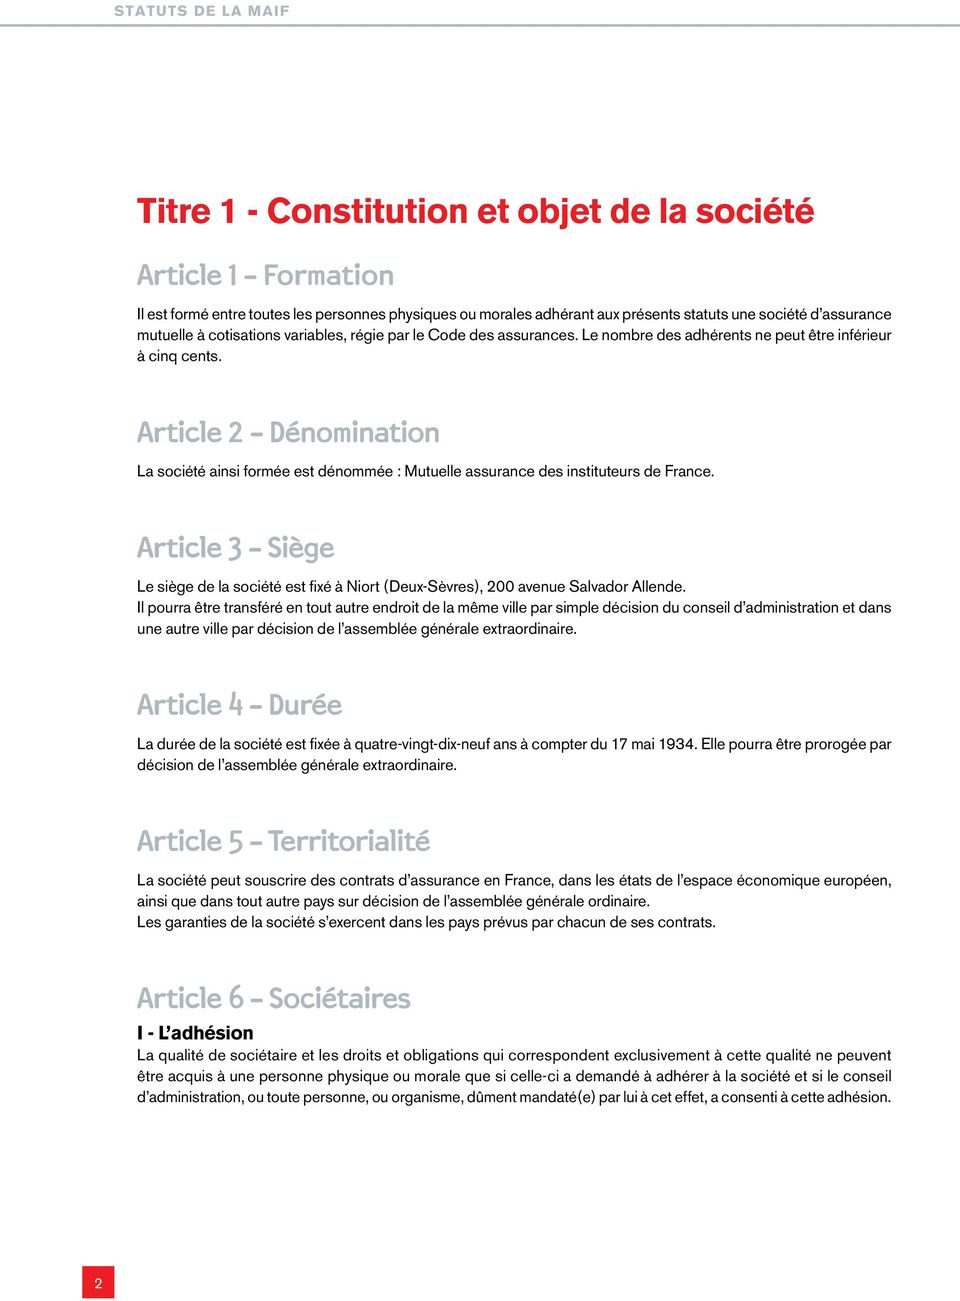 Article 2 - Dénomination La société ainsi formée est dénommée : Mutuelle assurance des instituteurs de France.